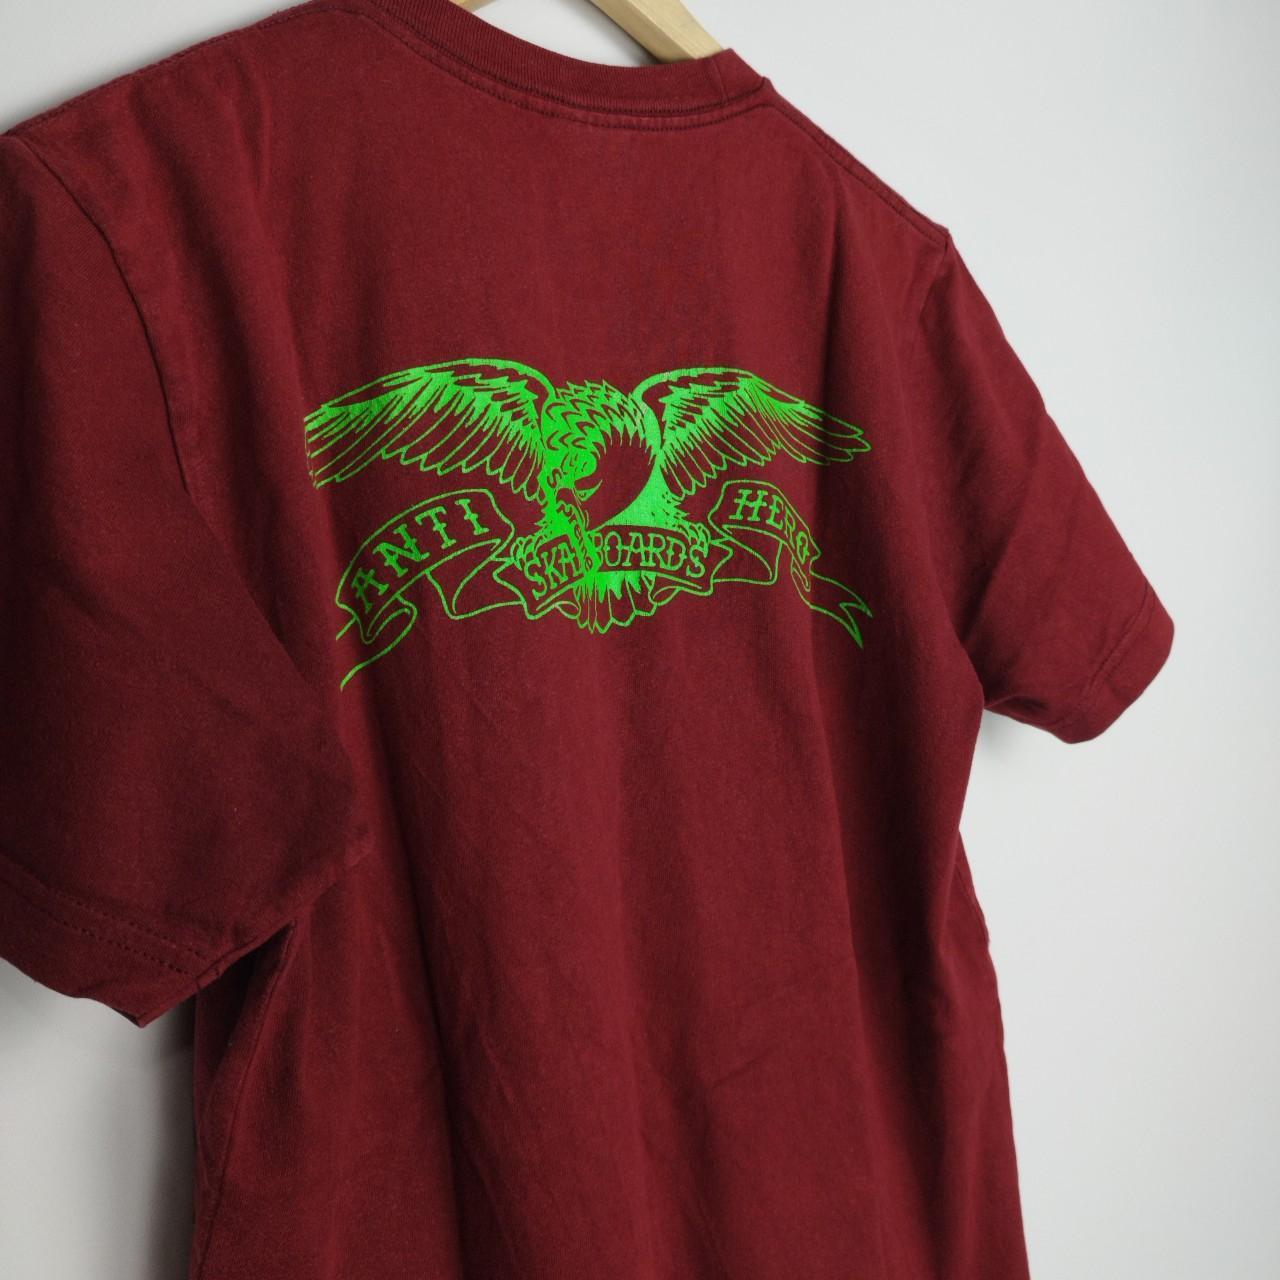 Supreme x Antihero Skateboards pocket t-shirt in